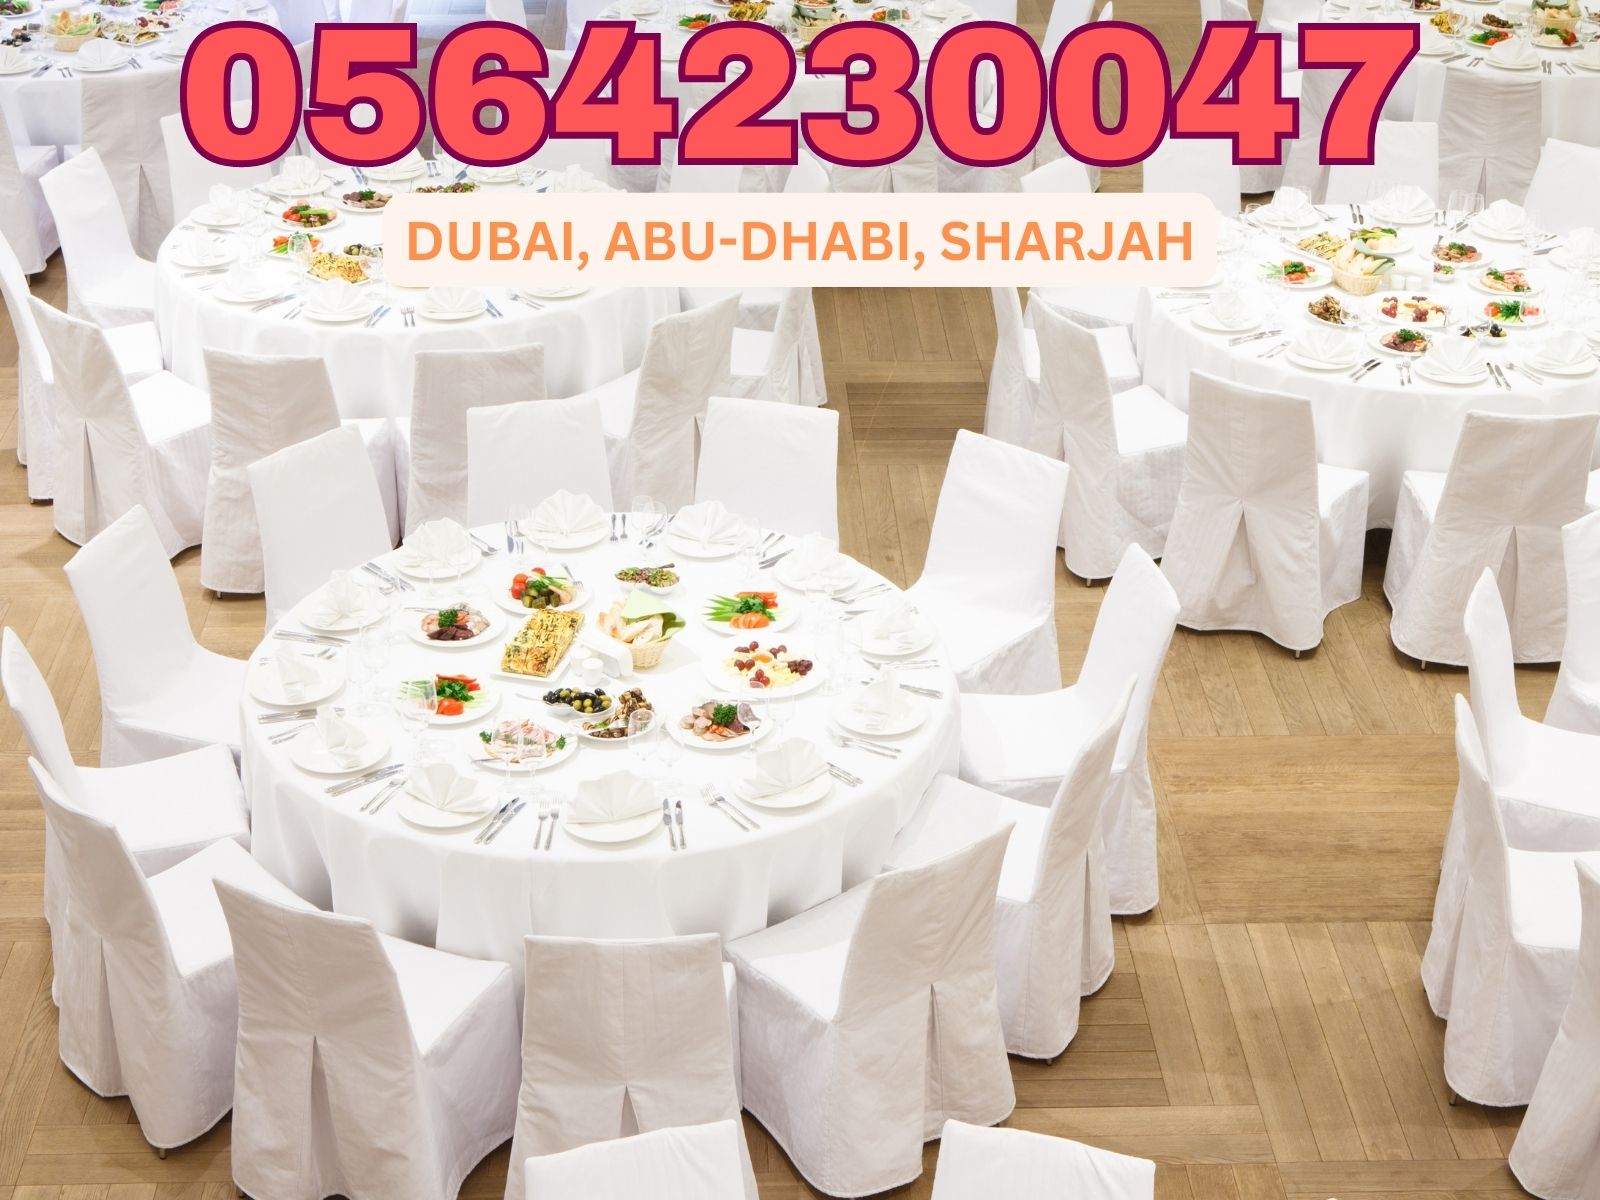 تاجير طاولات وكراسي مستديرة للمناسبات للايجار في دبي.